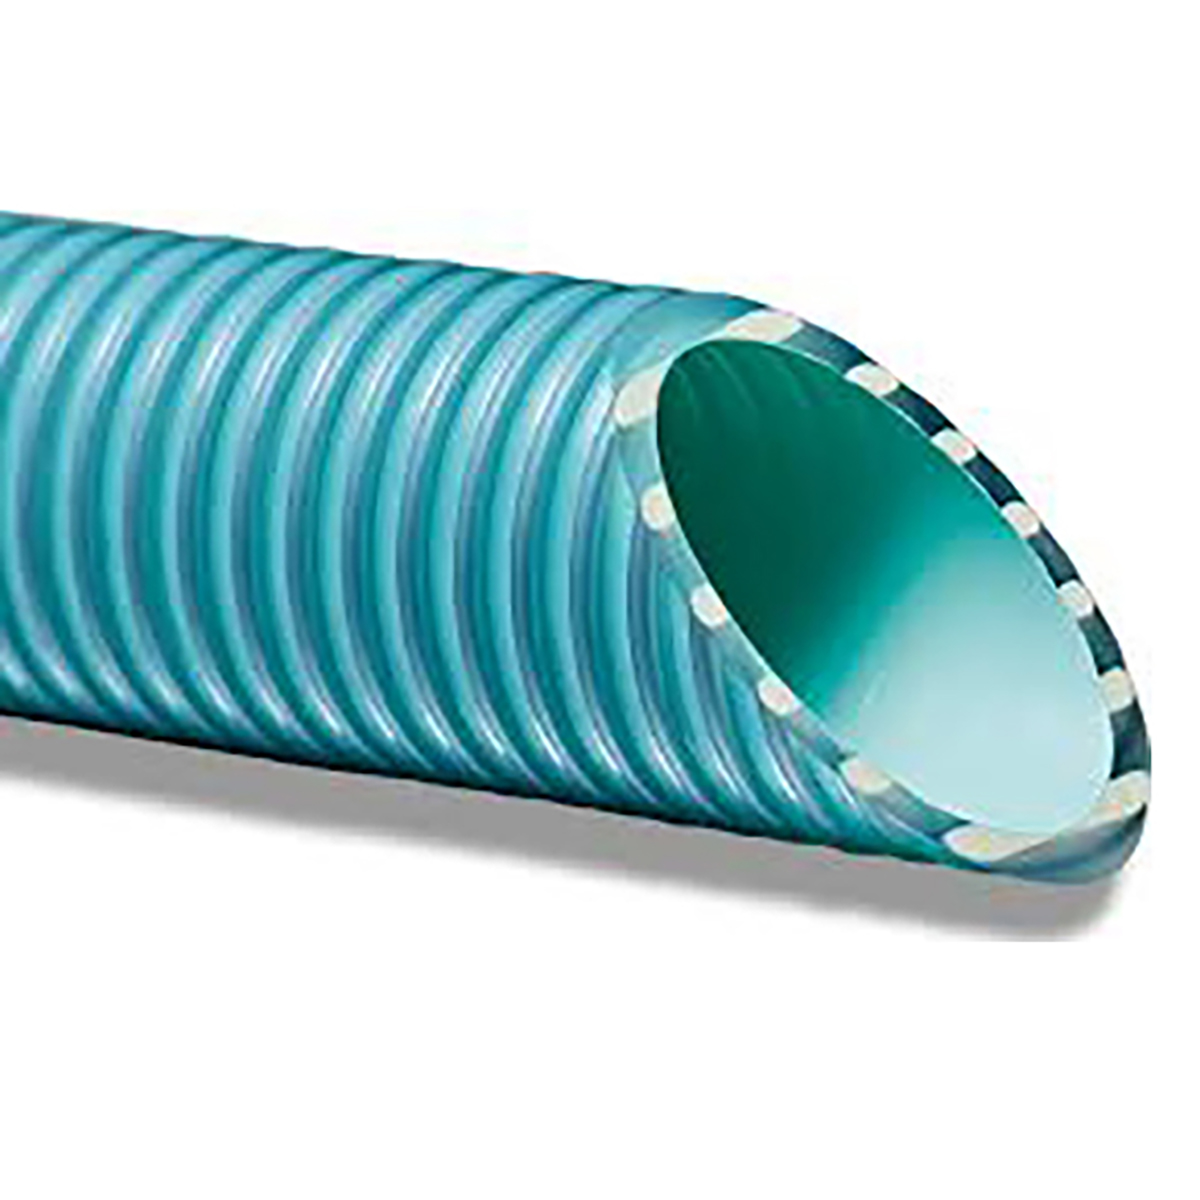 Peraqua PVC-Flex hose d63, reinforced, B-active, 63-55, l=25 m, ISO 1307:2008 Peraqua PVC-Flex hose d63, reinforced, B-active, 63-55, l=25 m, ISO 1307:2008